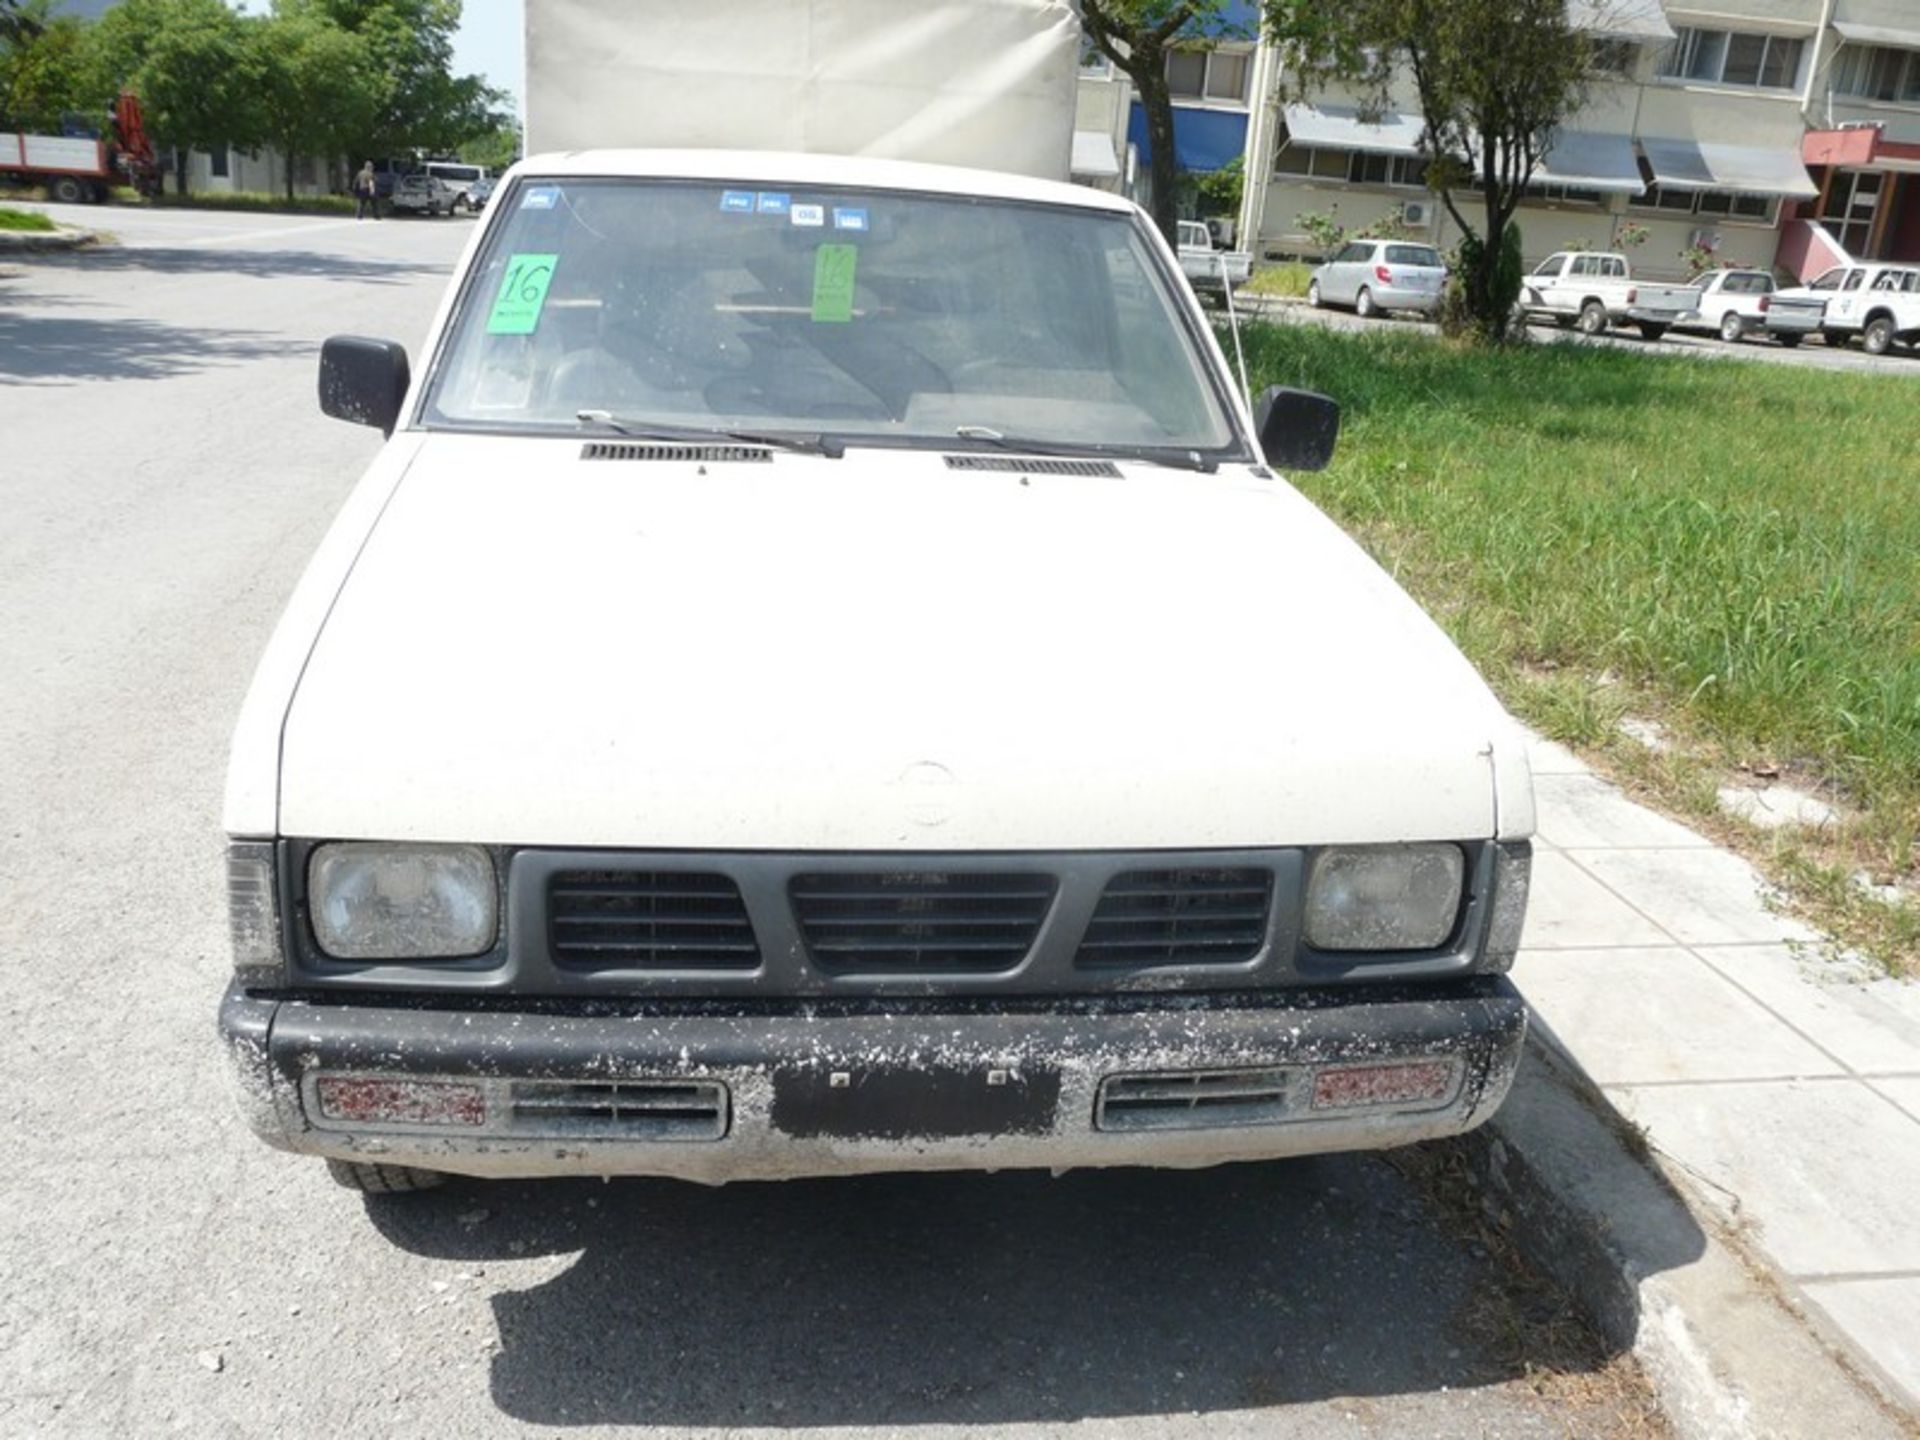 NISSAN PICK-UP, petrol, REG NBK 3436, Petrol, KM 336597, Year: 1993 (Located in Greece - Plati